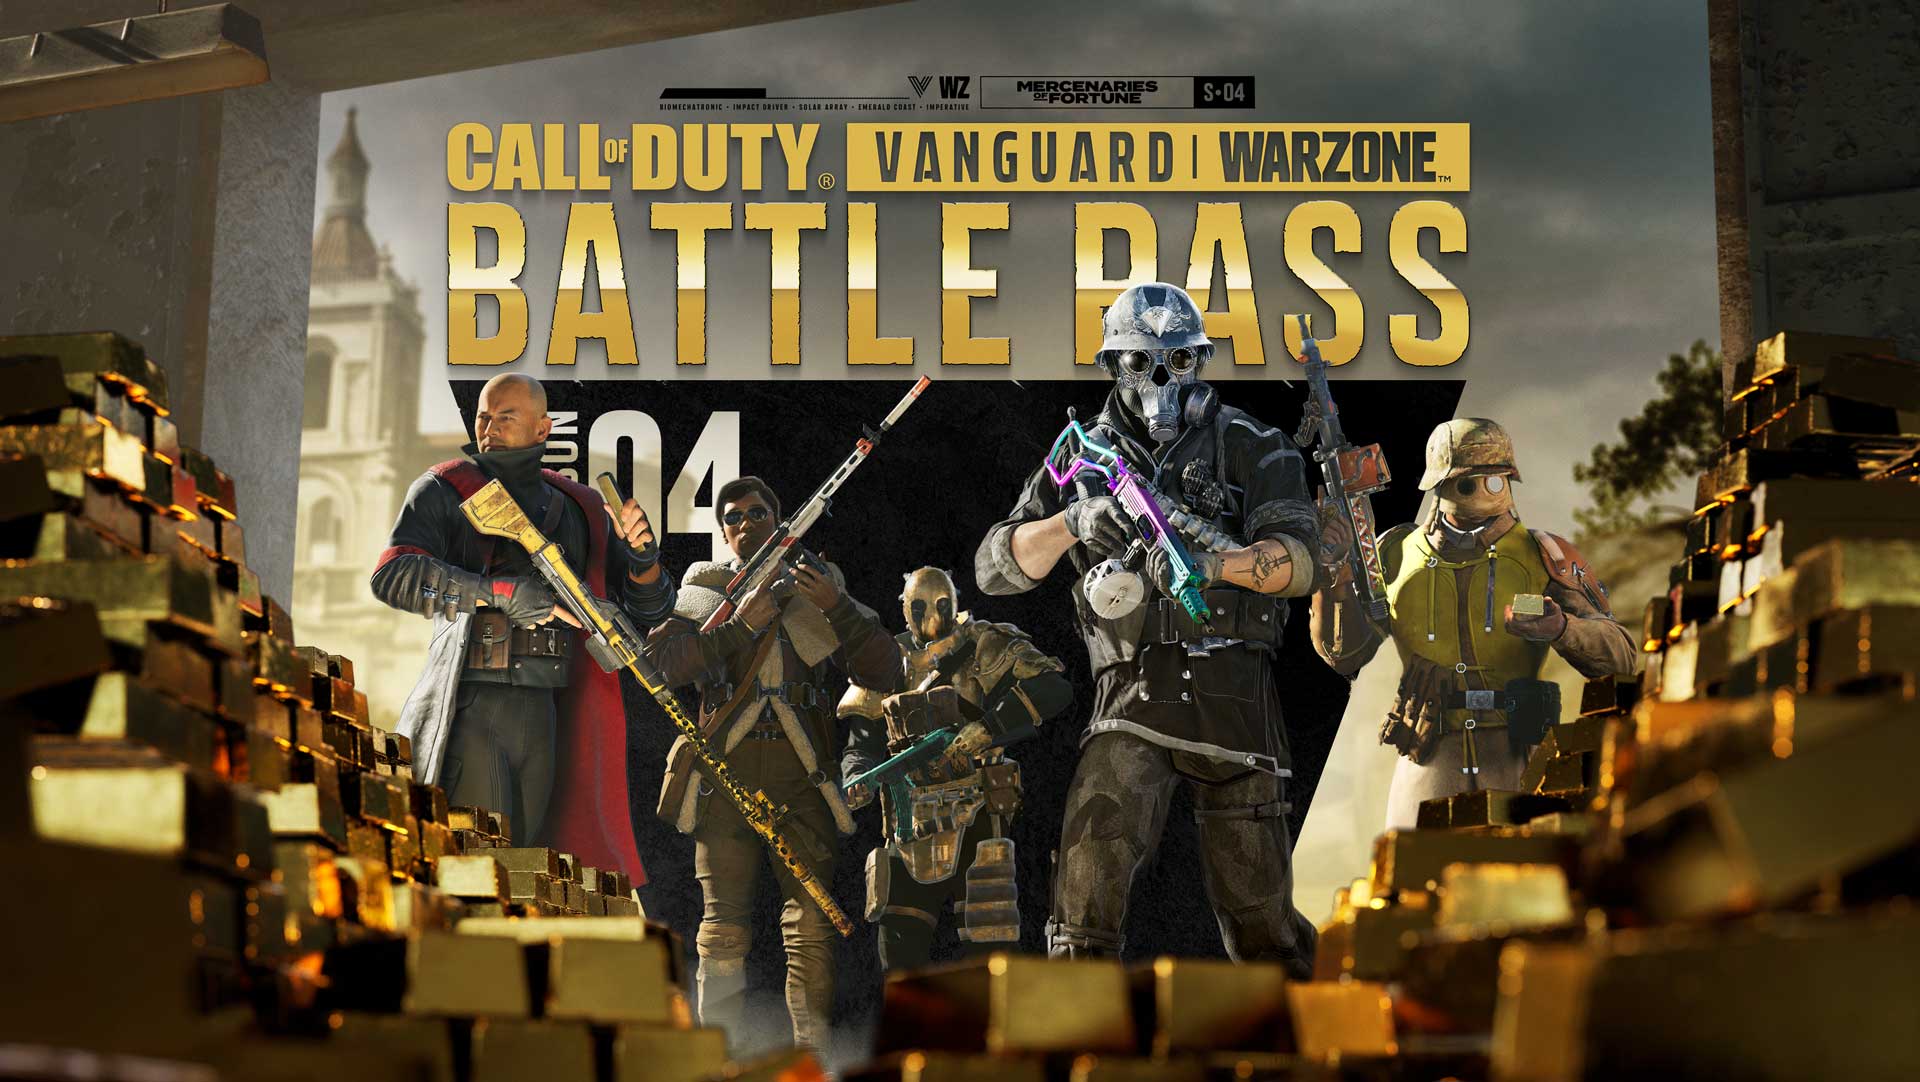 Detalles del Pase de batalla y los lotes de Mercenarios de la suerte de Call of Duty: Vanguard y Warzone